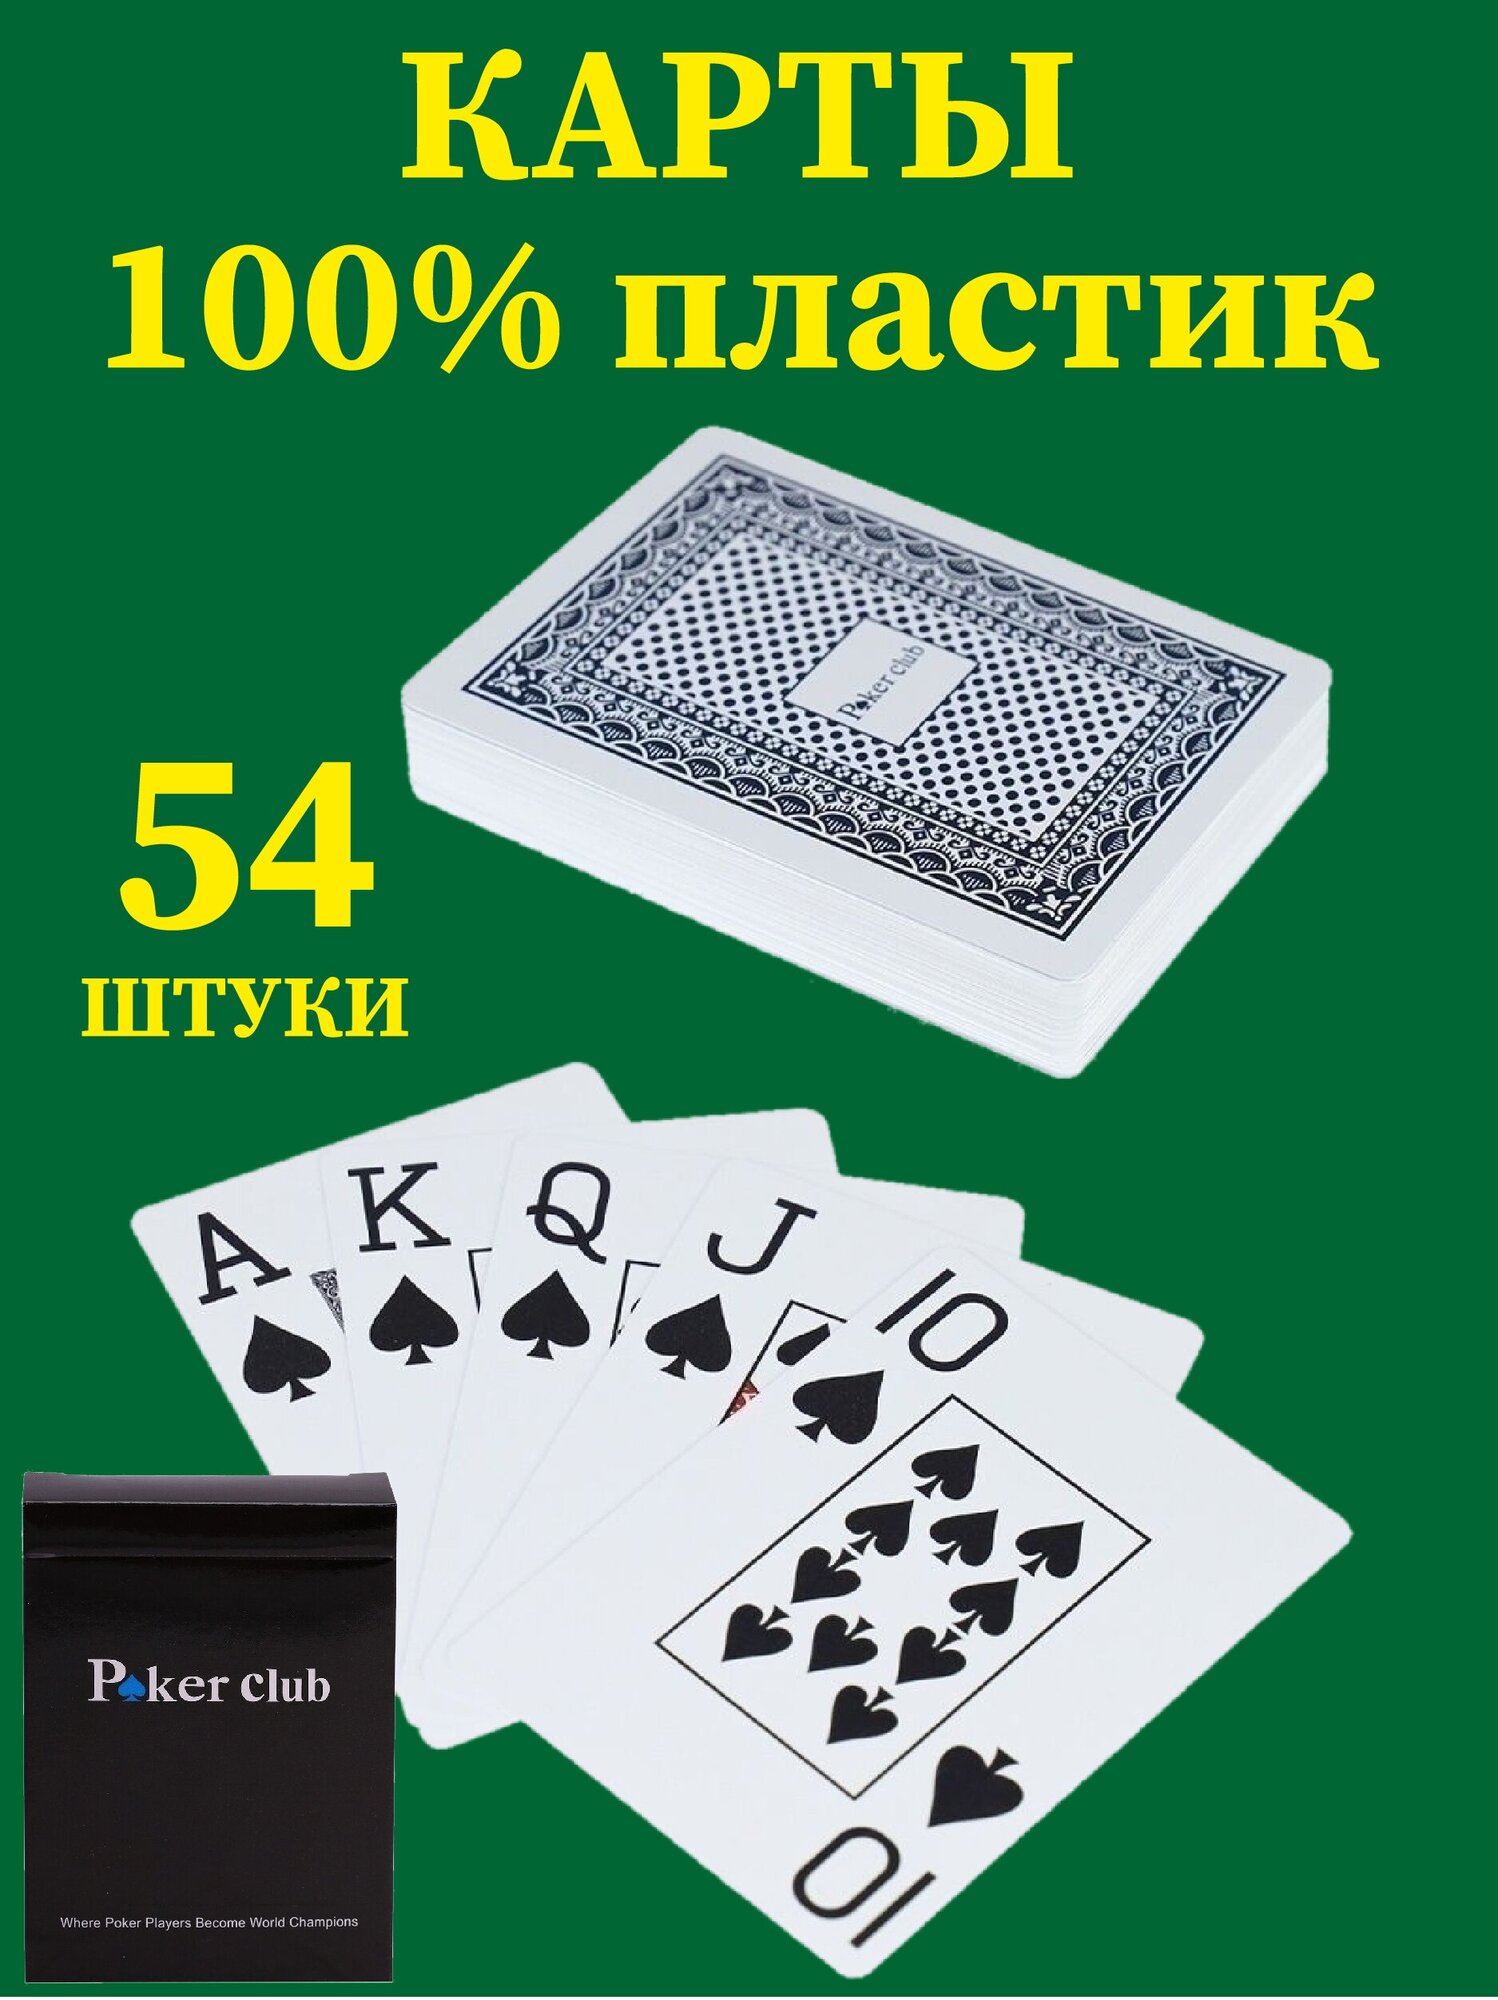 Пластиковые игральные карты Poker Club, 54 штуки, высокое качество, тактильно приятные, 100% пластик